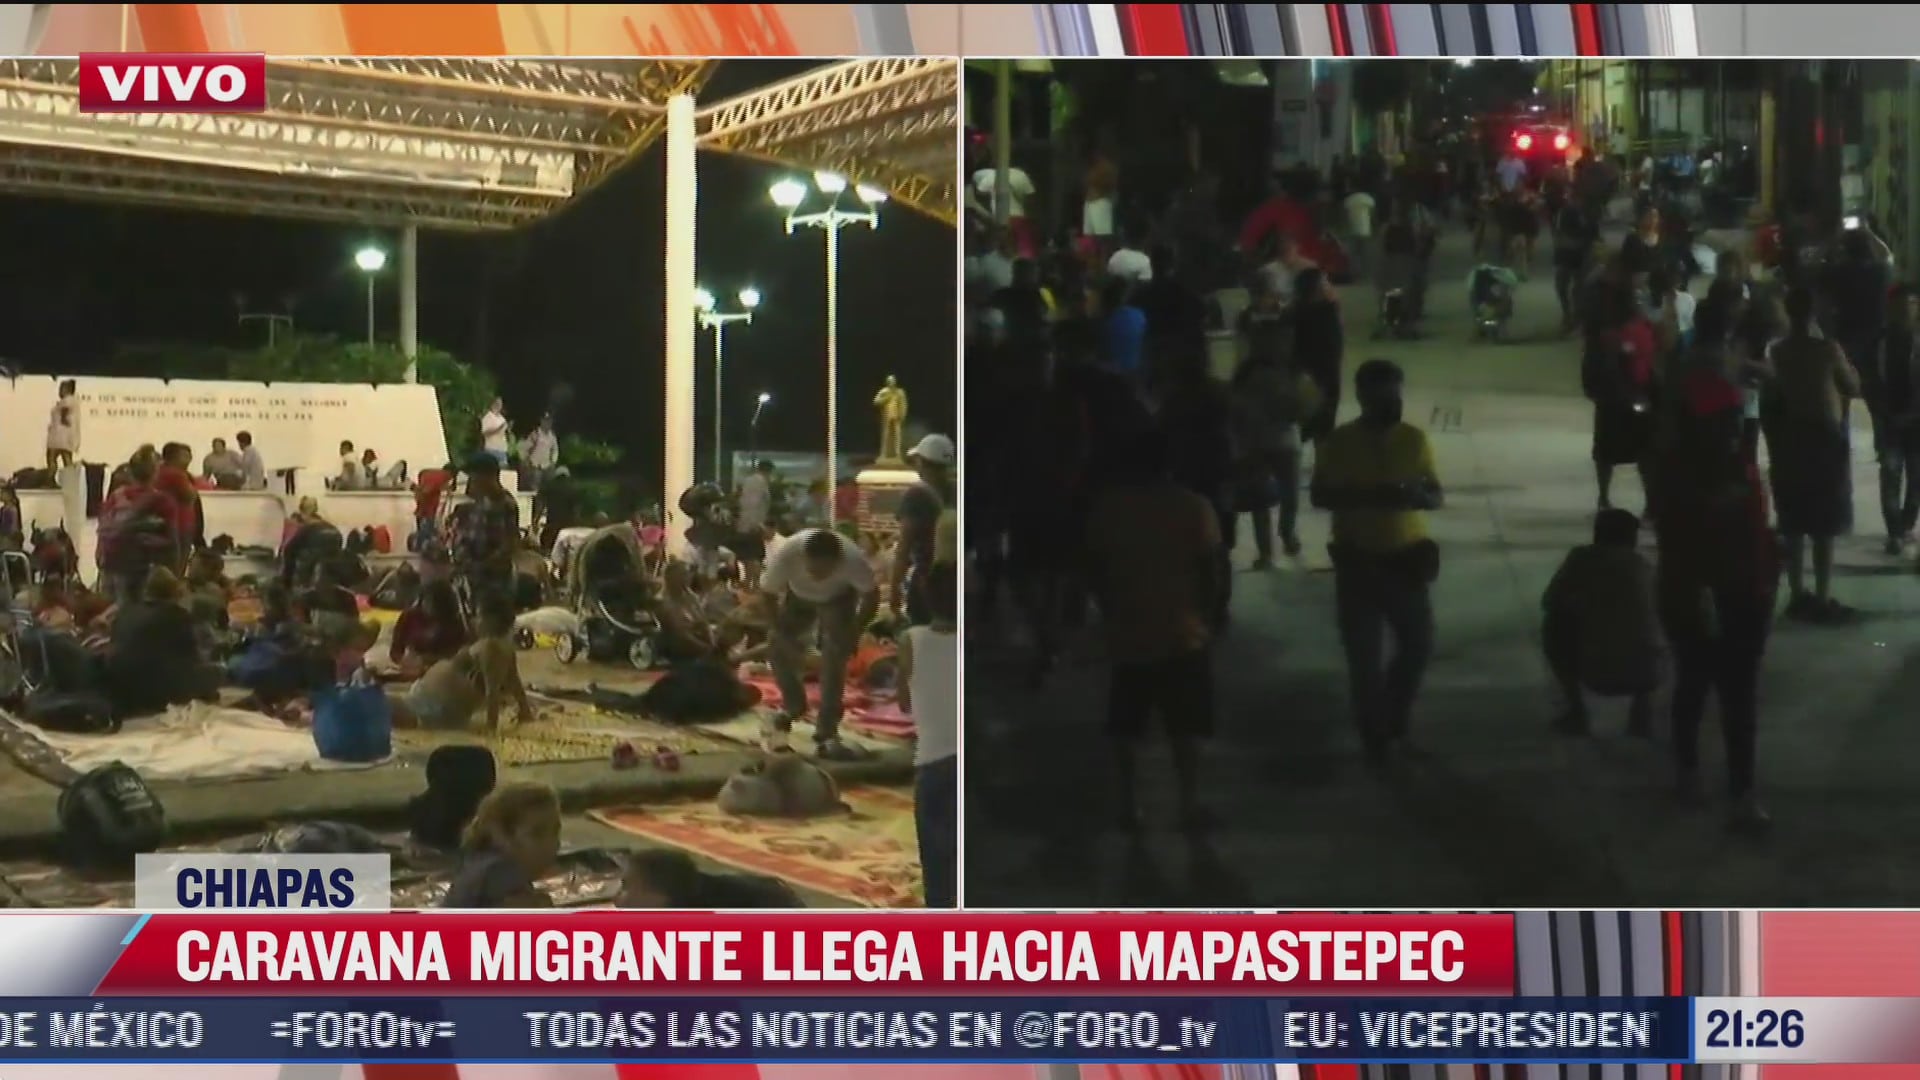 Caravana migrante llega a Mapastepec, Chiapas